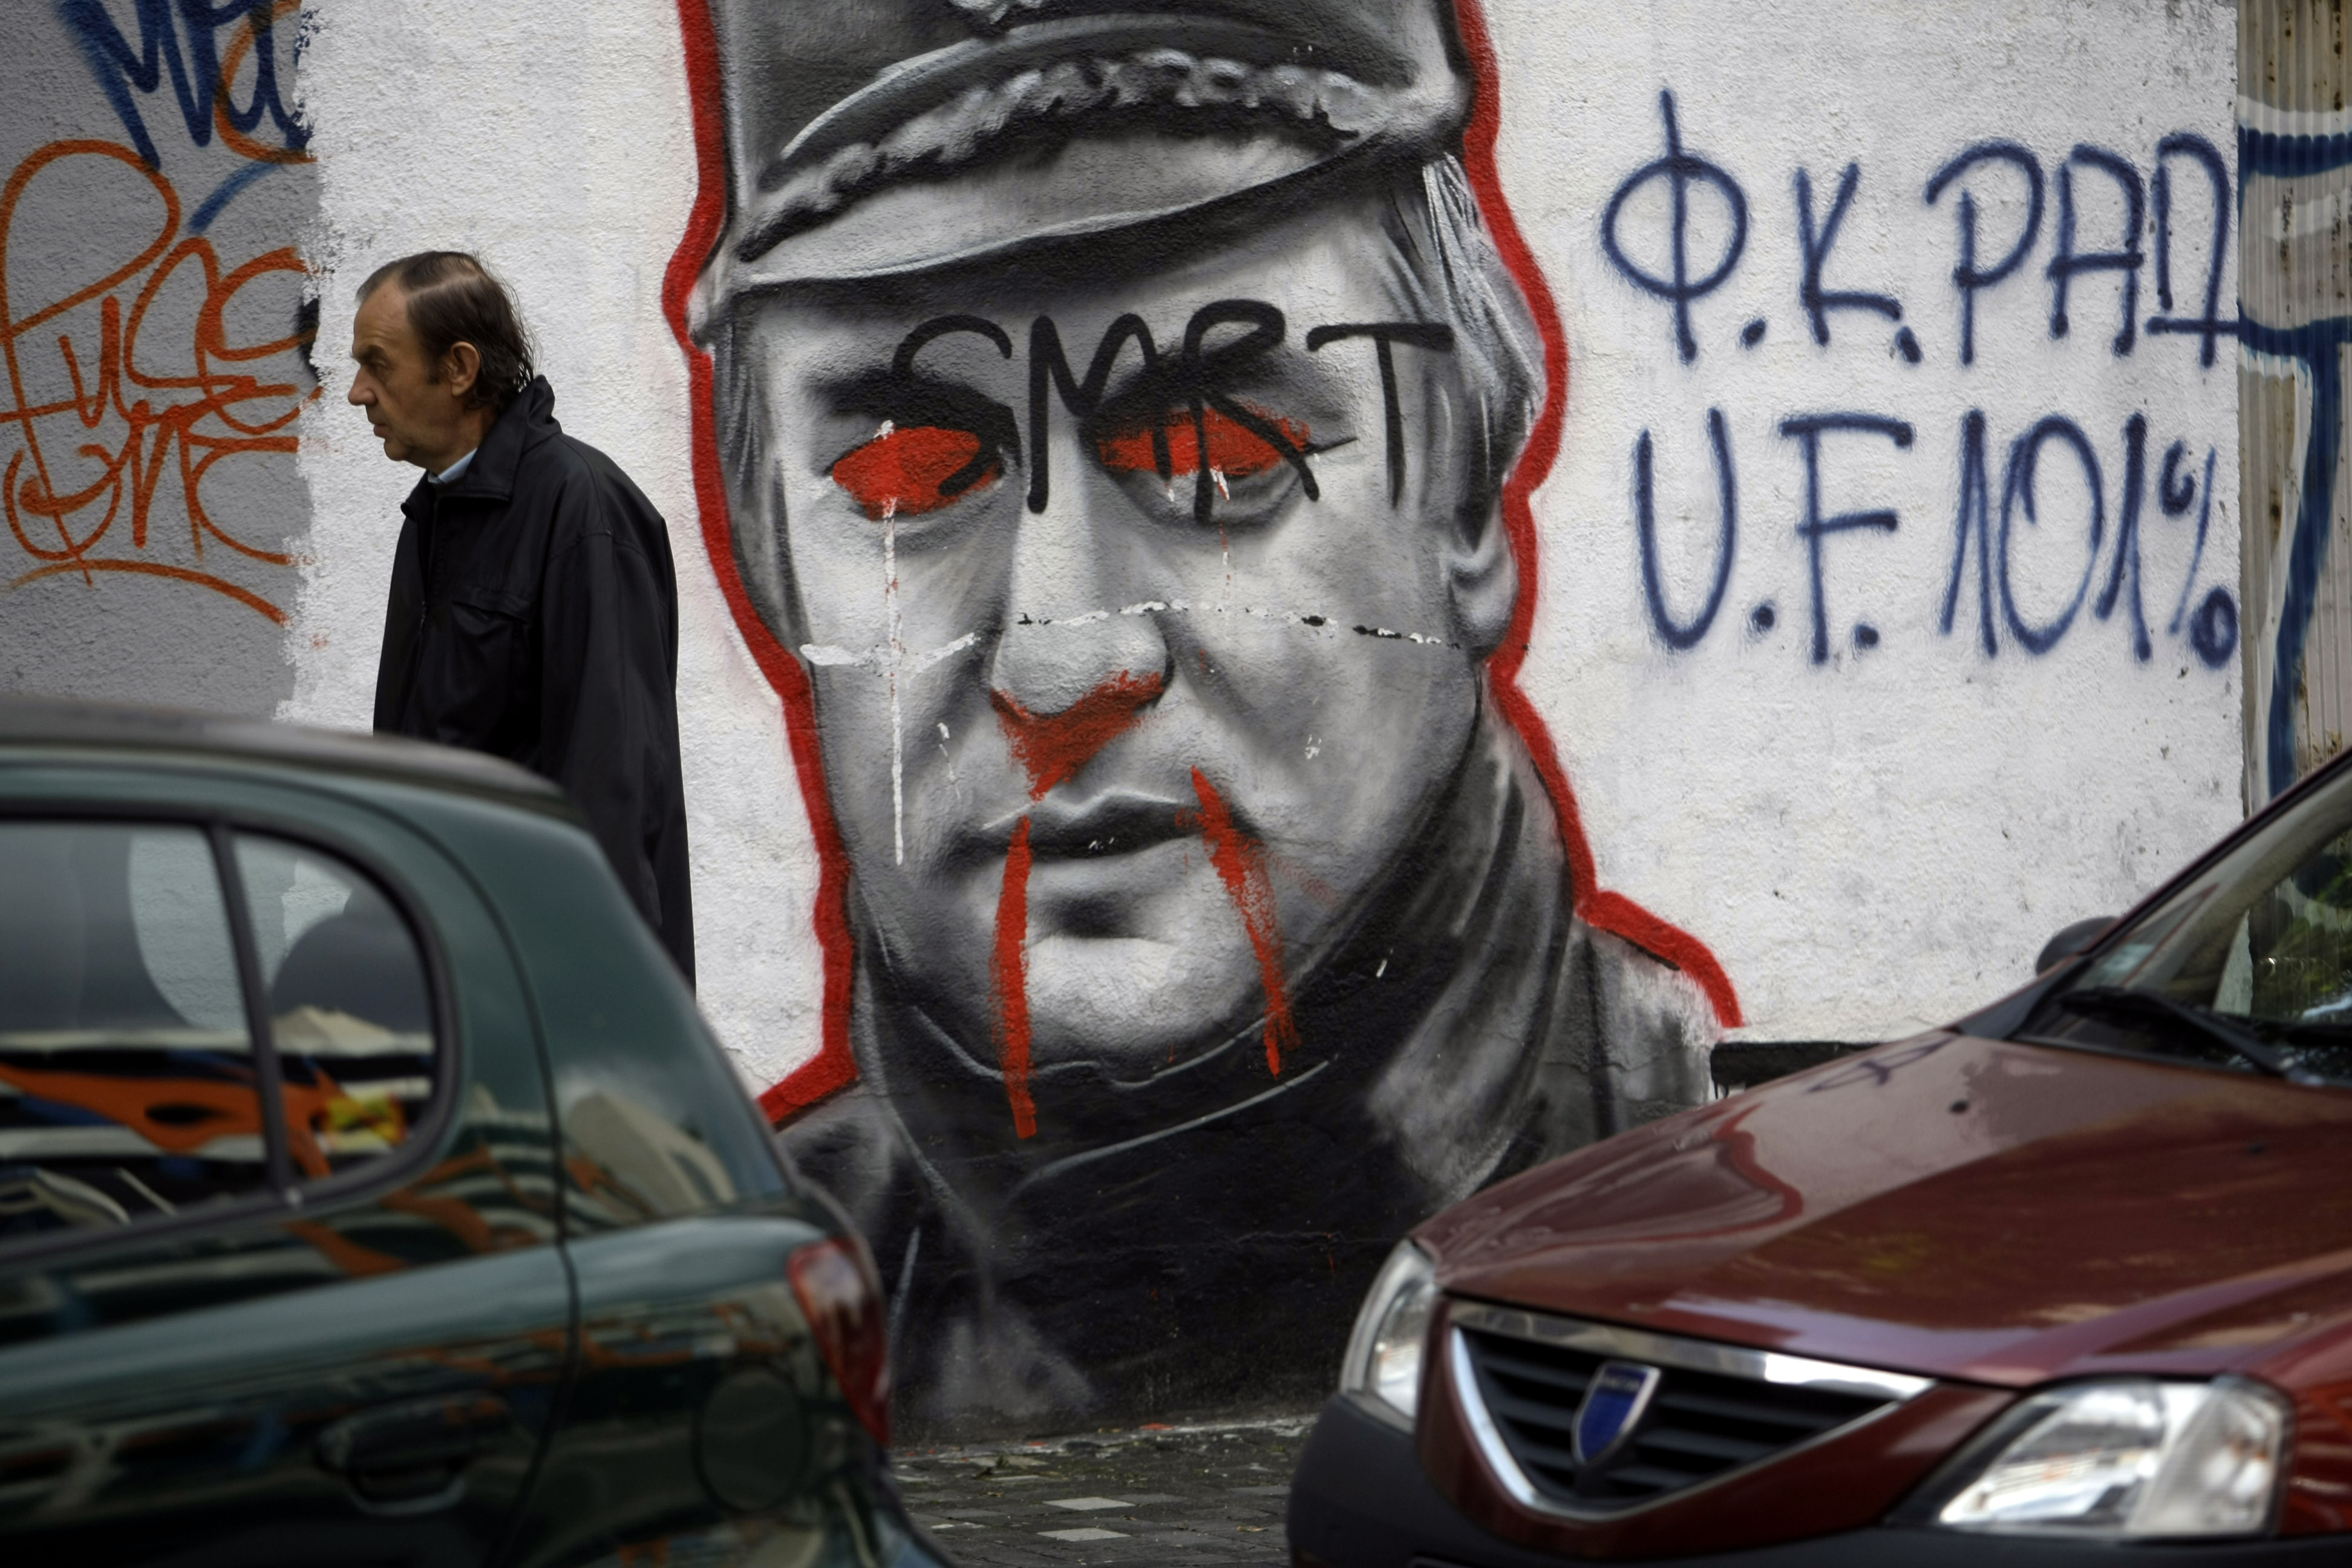 Konflikten var en följd av upplösningen av Jugoslavien, där båda parter slogs för självständighet. Mladic på en väggmålning i Belgrad.